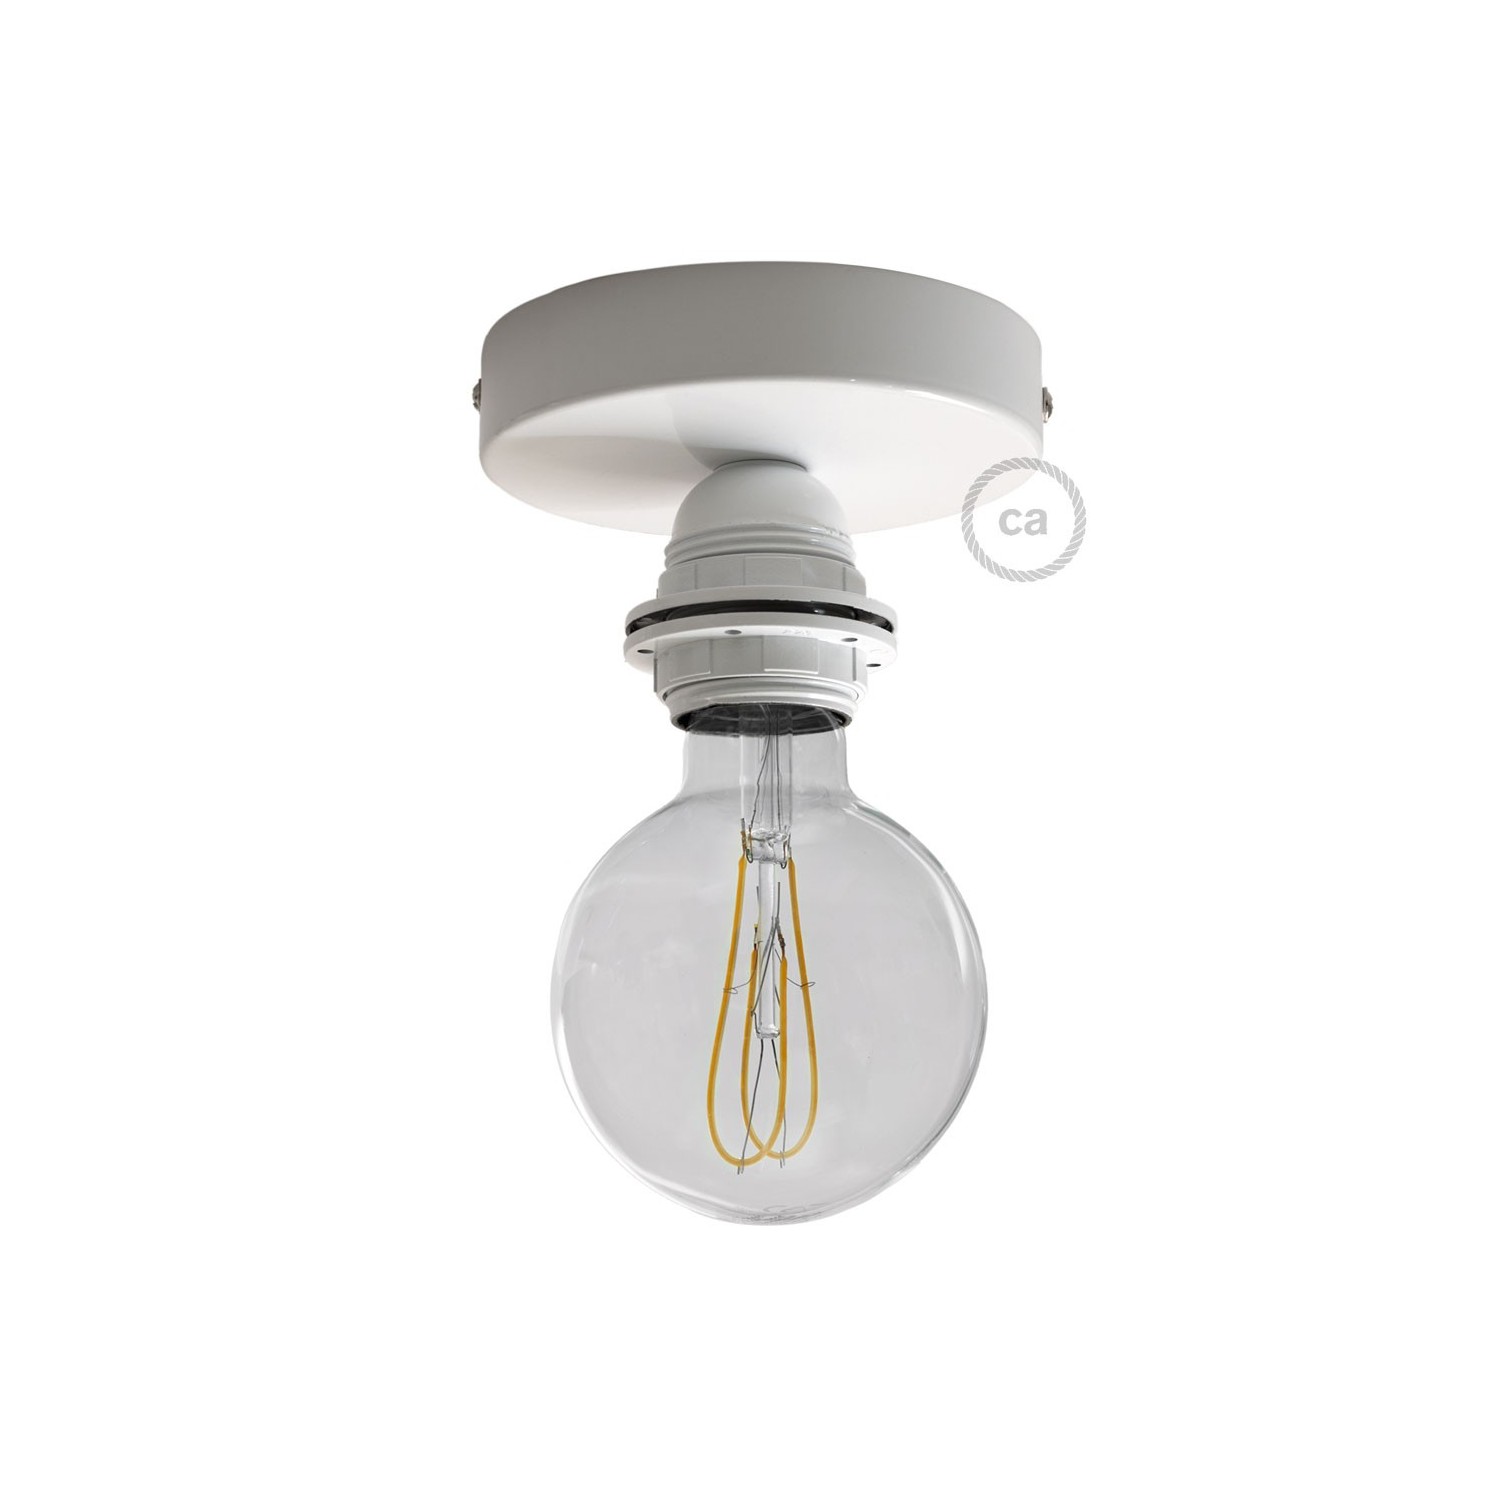 Fermaluce Monochrome s držačem žarulje navoja E27, metalna zidna ili stropna lampa